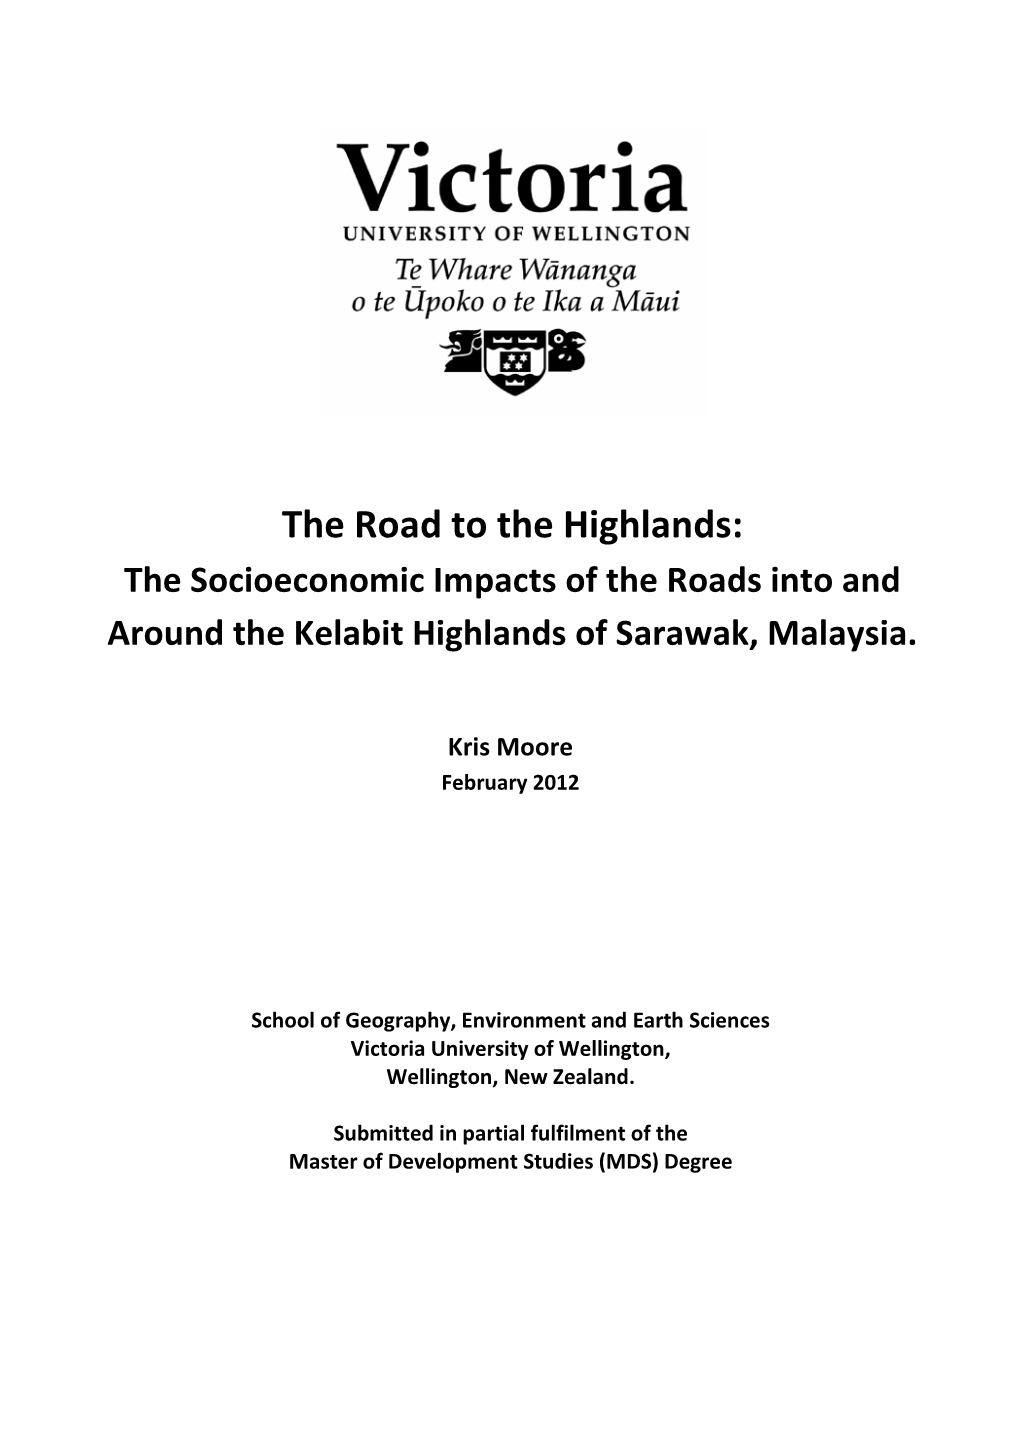 The Socioeconomic Impacts of Roads Into and Around the Kelabit